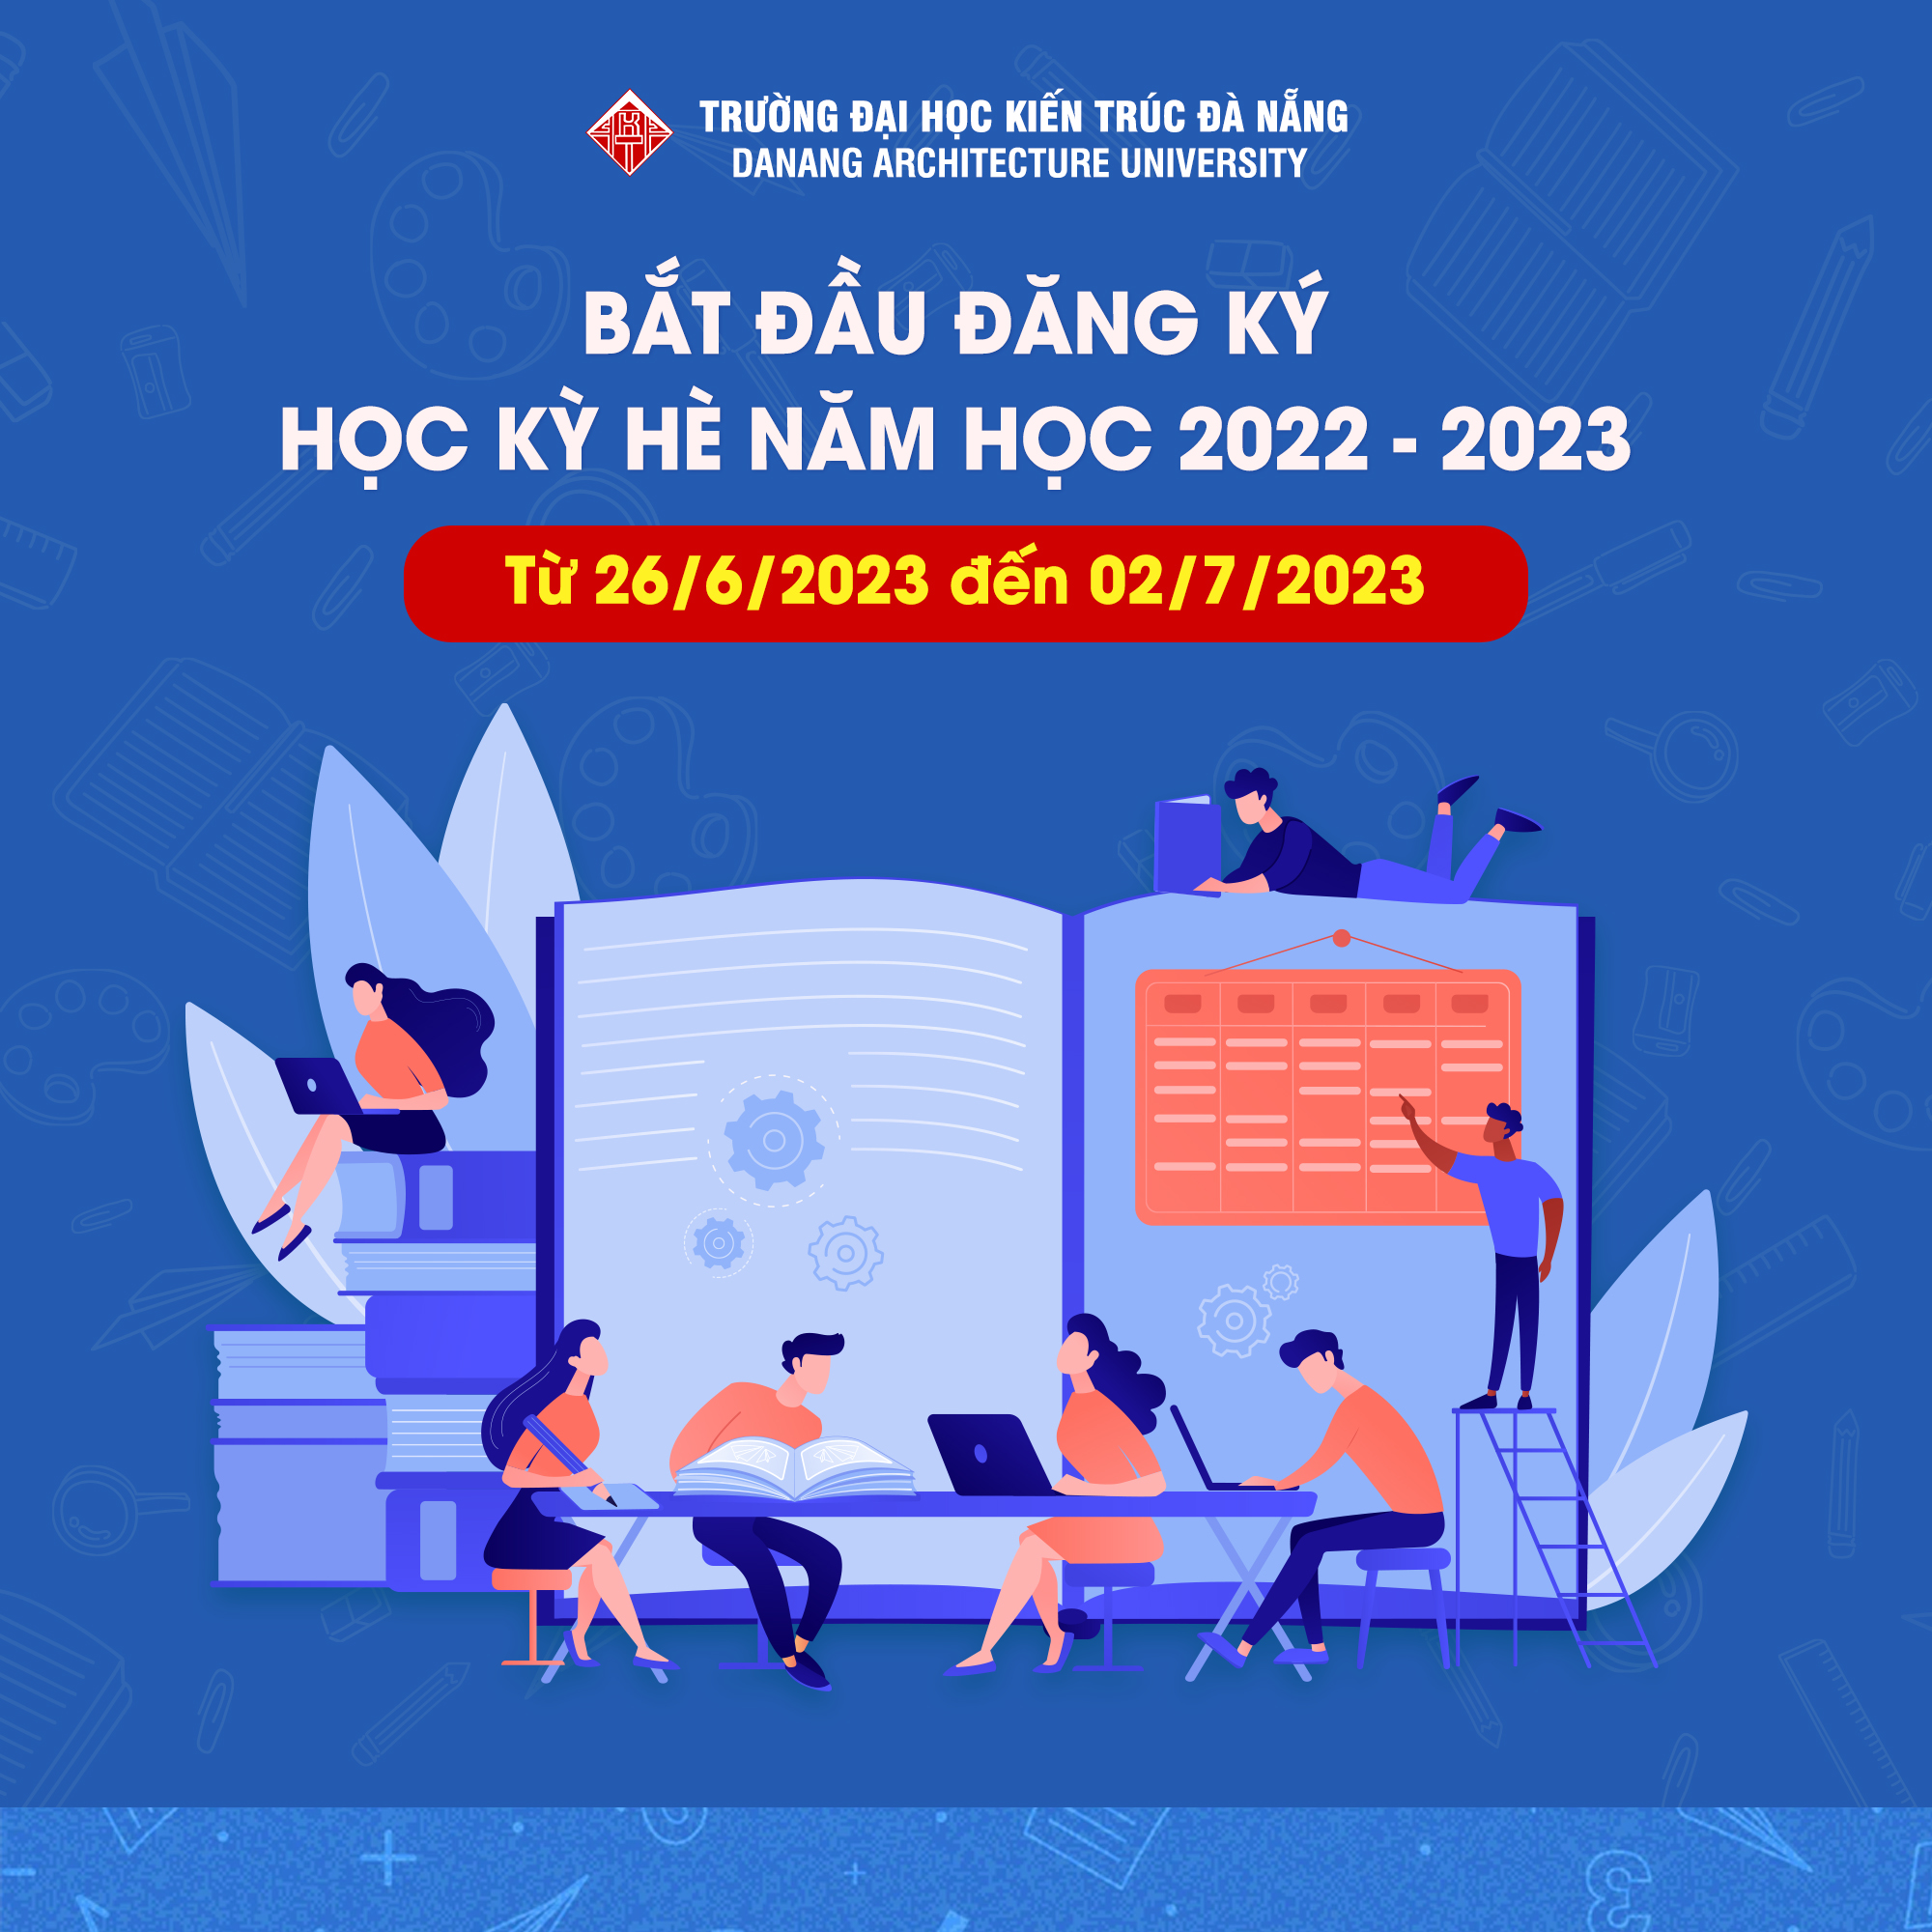 Thông báo tổ chức học kỳ hè năm học 2022 - 2023 